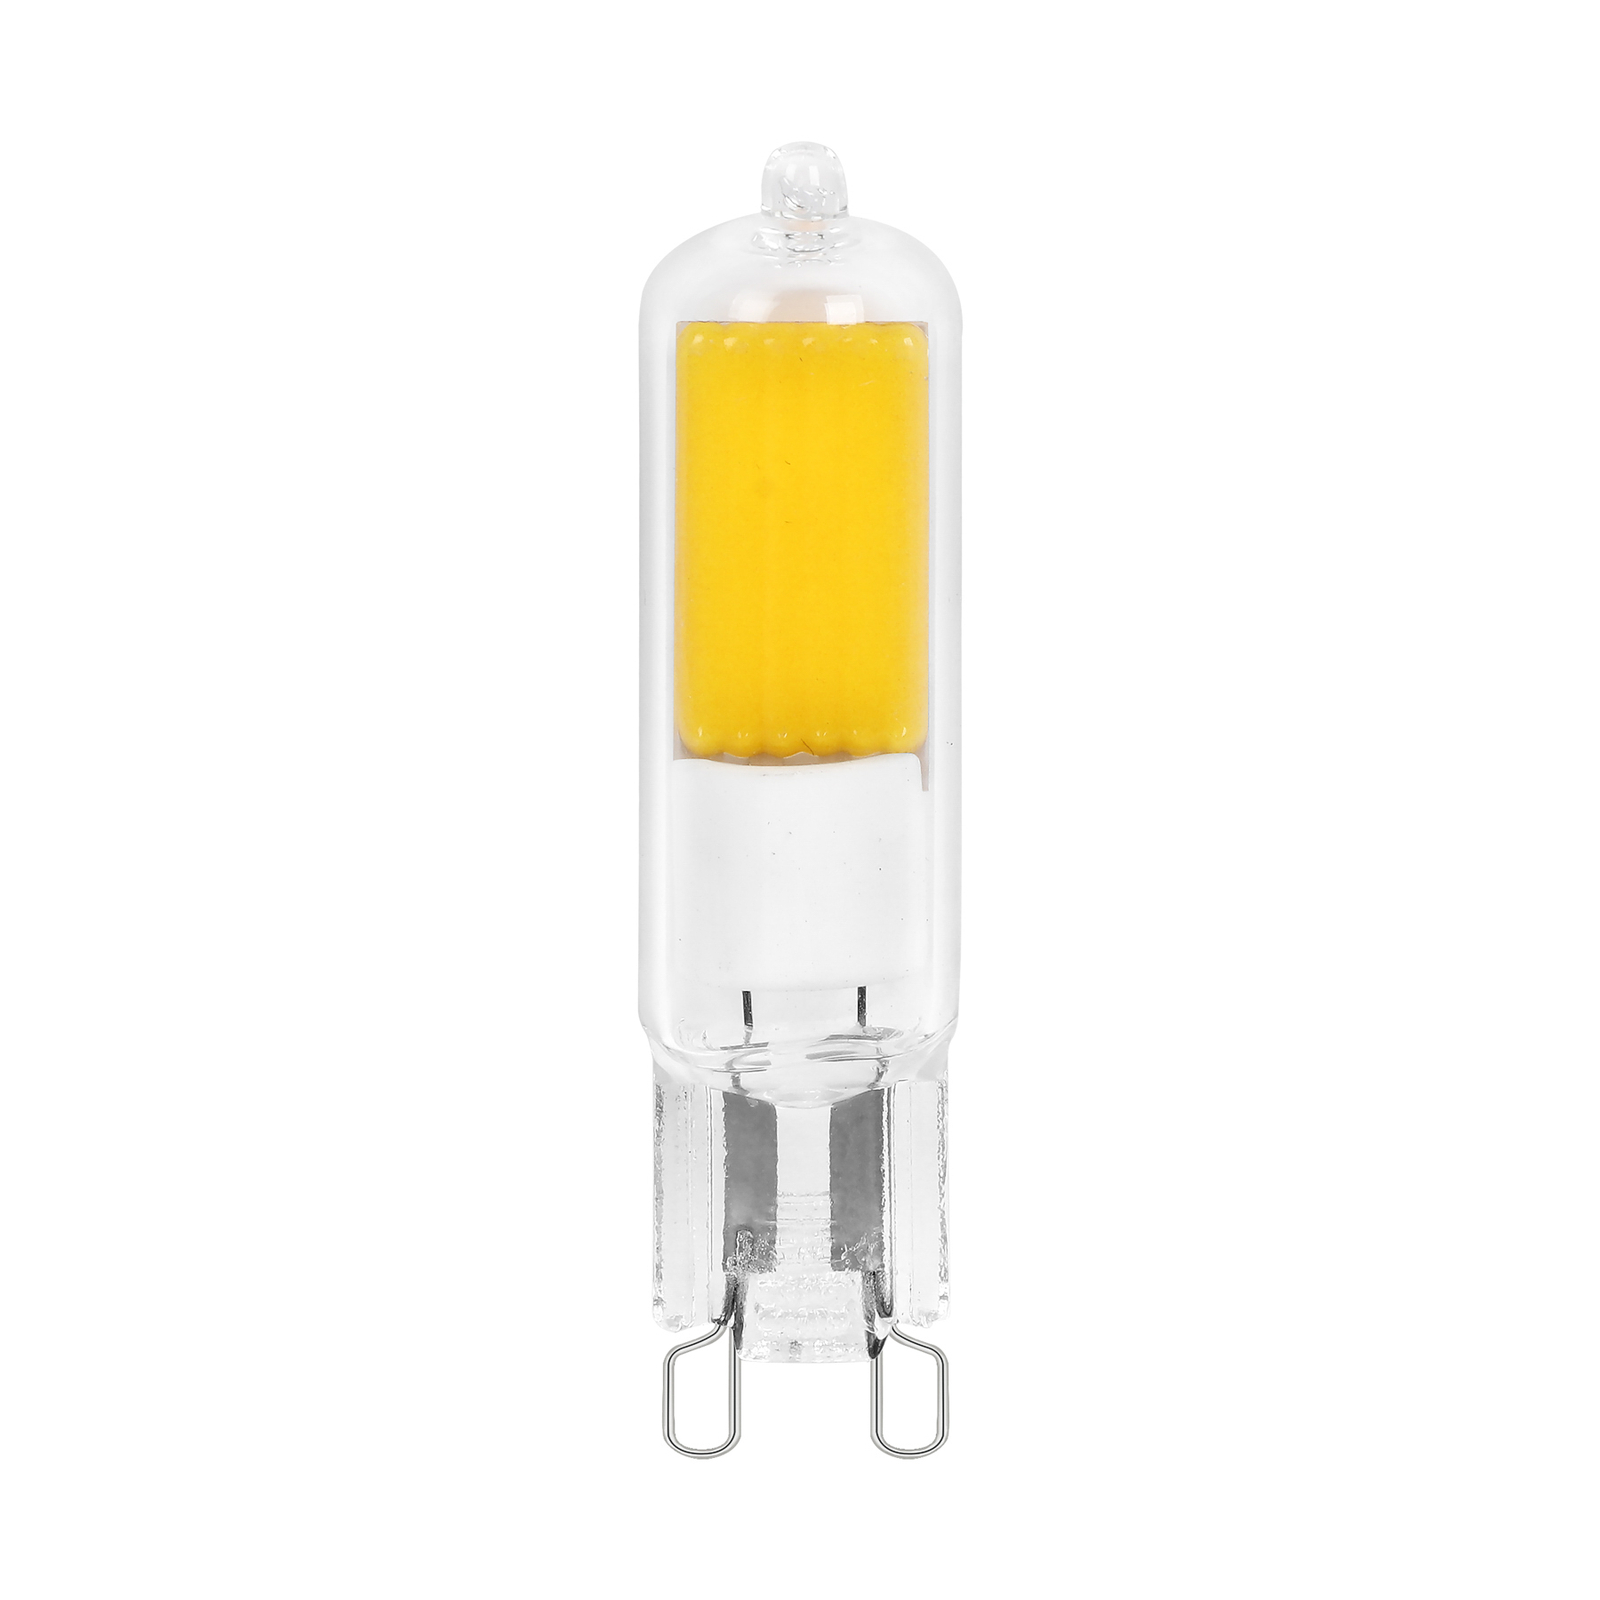 Arcchio bi-pin LED bulb, G9, 2.2W, 2700K, set of 5